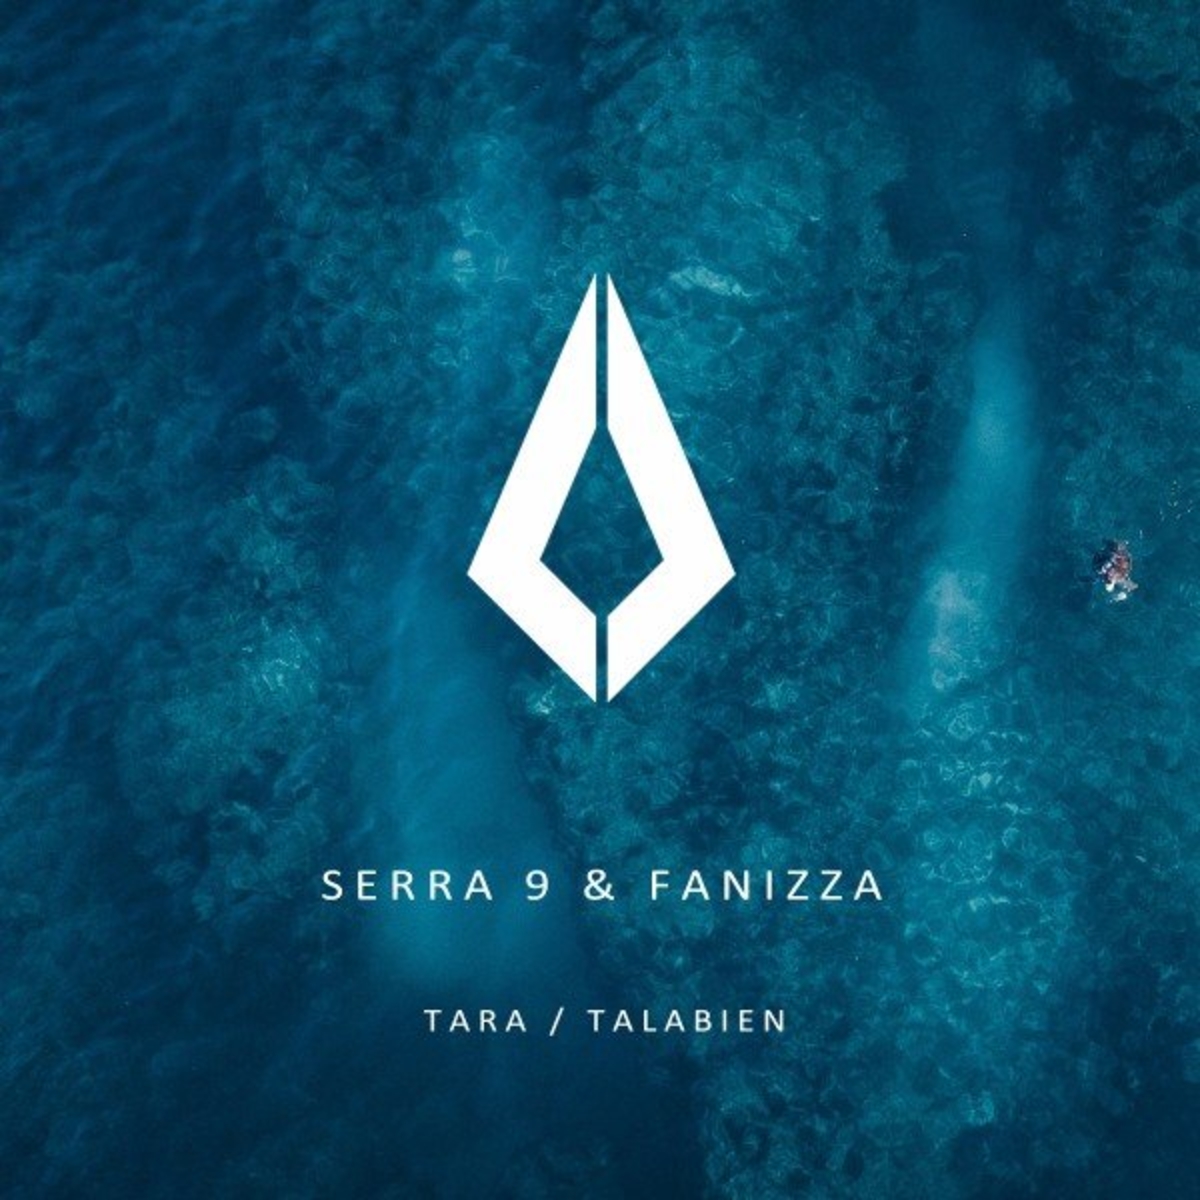 Serra 9 & Fanizza - Tara - Talabien [PF045]